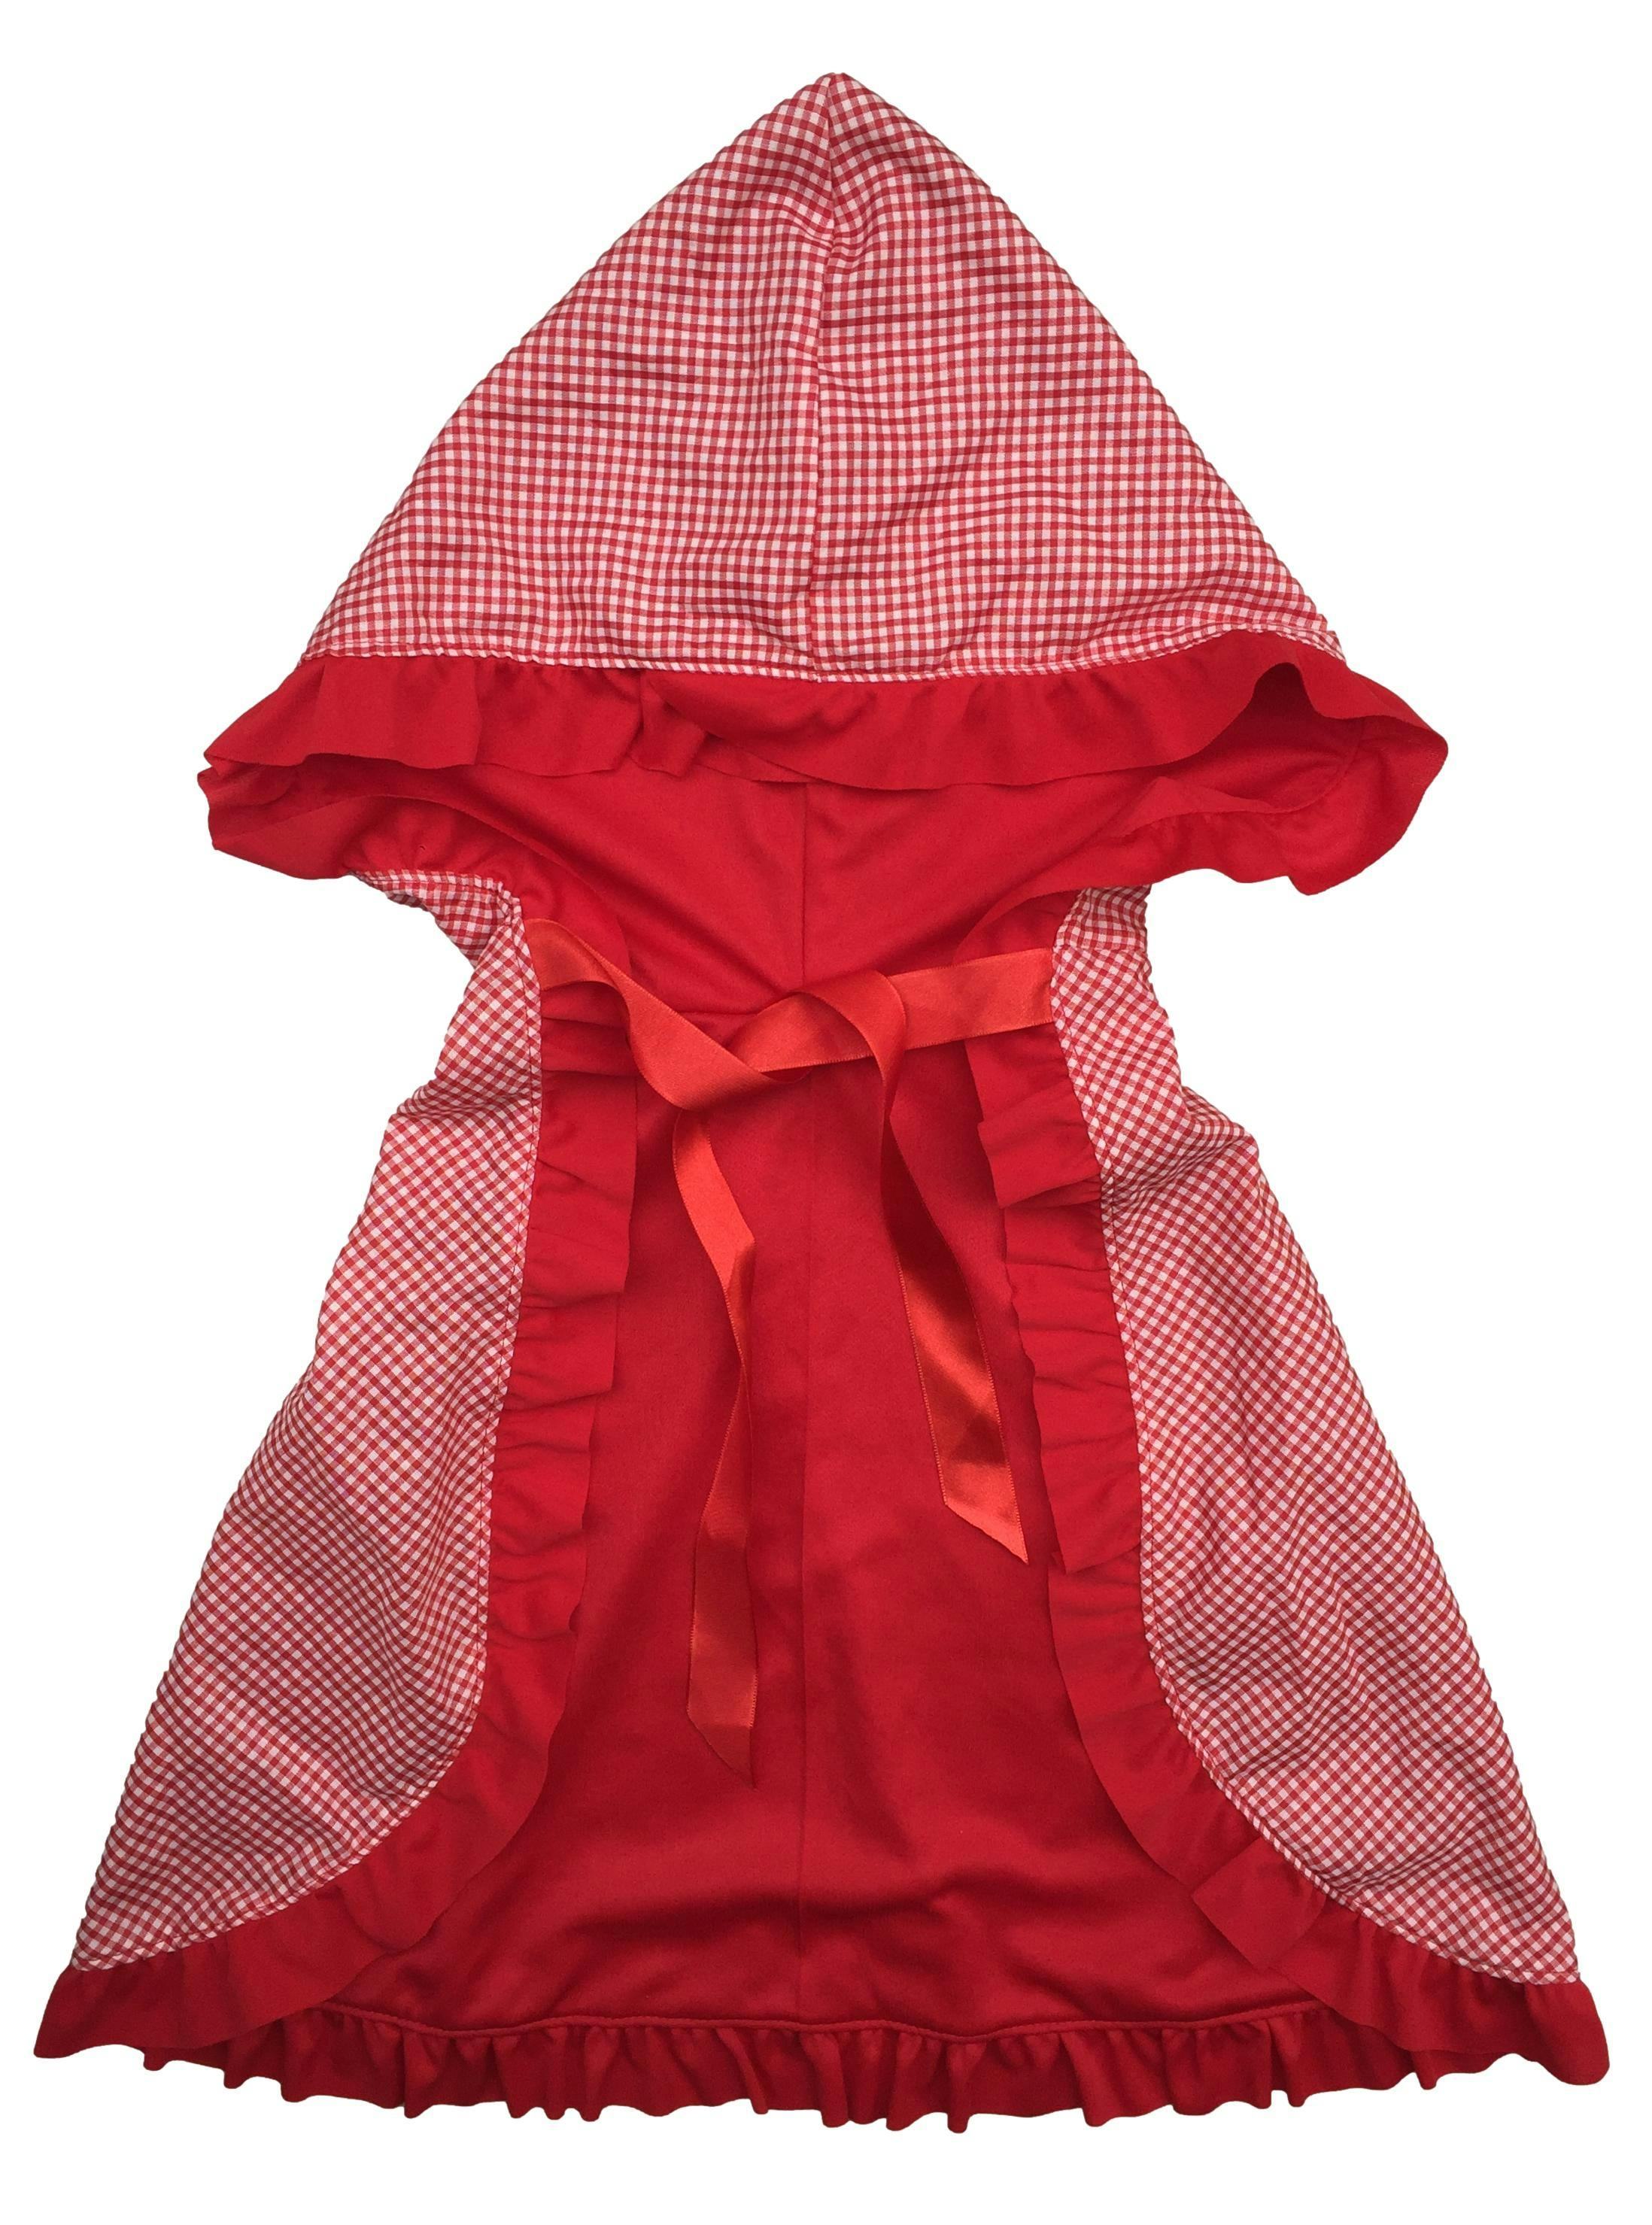 Lencería Bombon Rojo, disfraz de caperucita roja, capa a cuadros, falda con pliegues de tul y tela, portaligas y corset. Estado 9/10